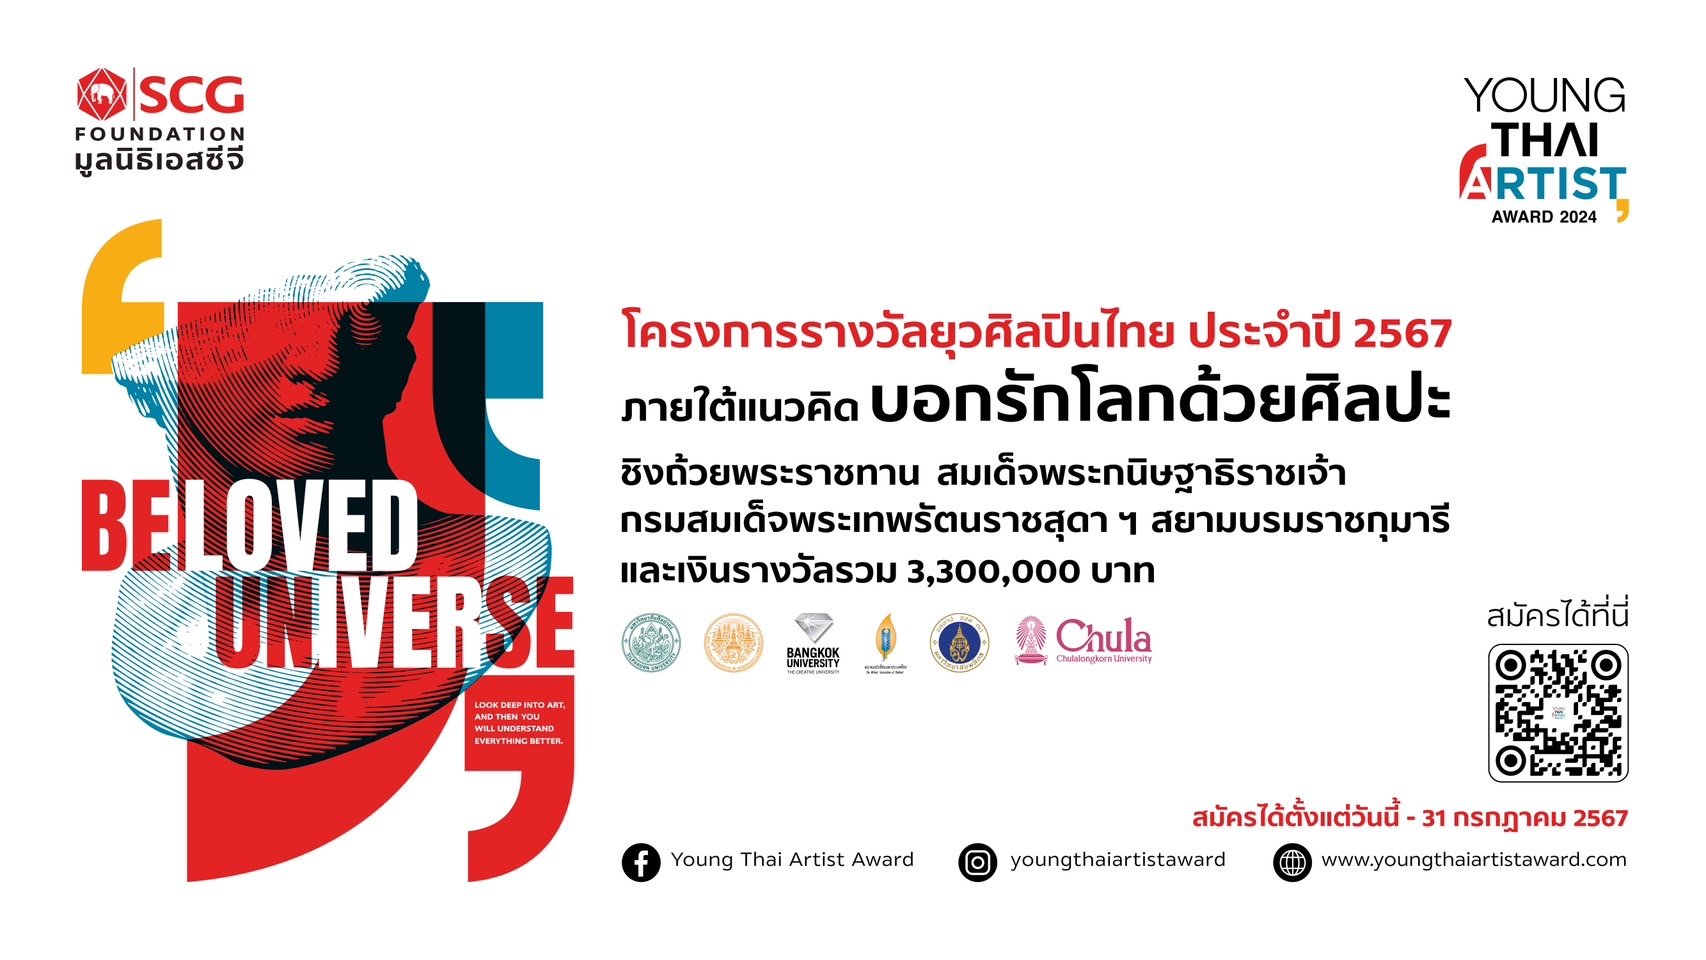 มูลนิธิเอสซีจี ขอเชิญชวนเยาวชนไทยร่วมส่งผลงานประกวดในโครงการ​ Young Thai Artist Award 2024 ภายใต้ธีมการประกวด “Beloved Universe: บอกรักโลกด้วยศิลปะ”